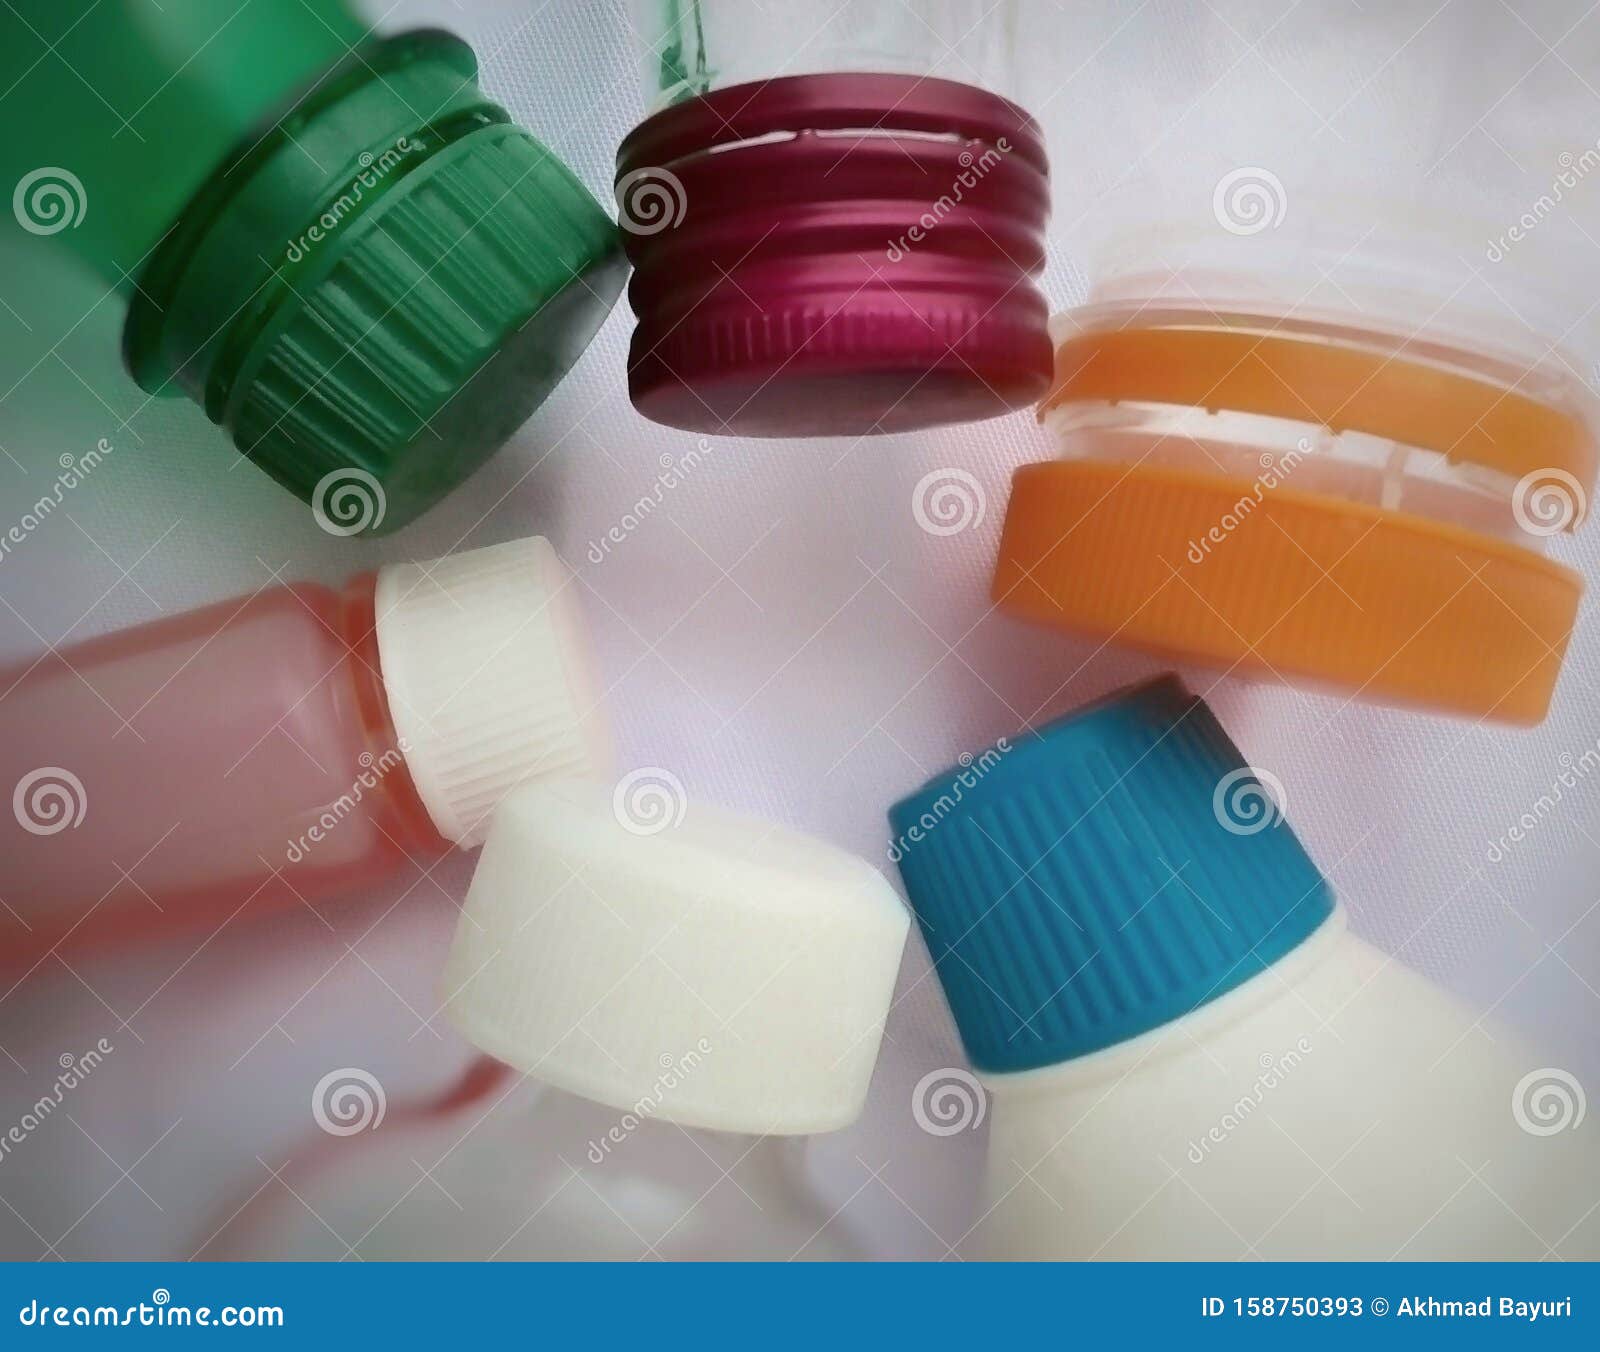 塑料瓶和瓶盖的集合体 具有各种形状和颜色库存图片 图片包括有